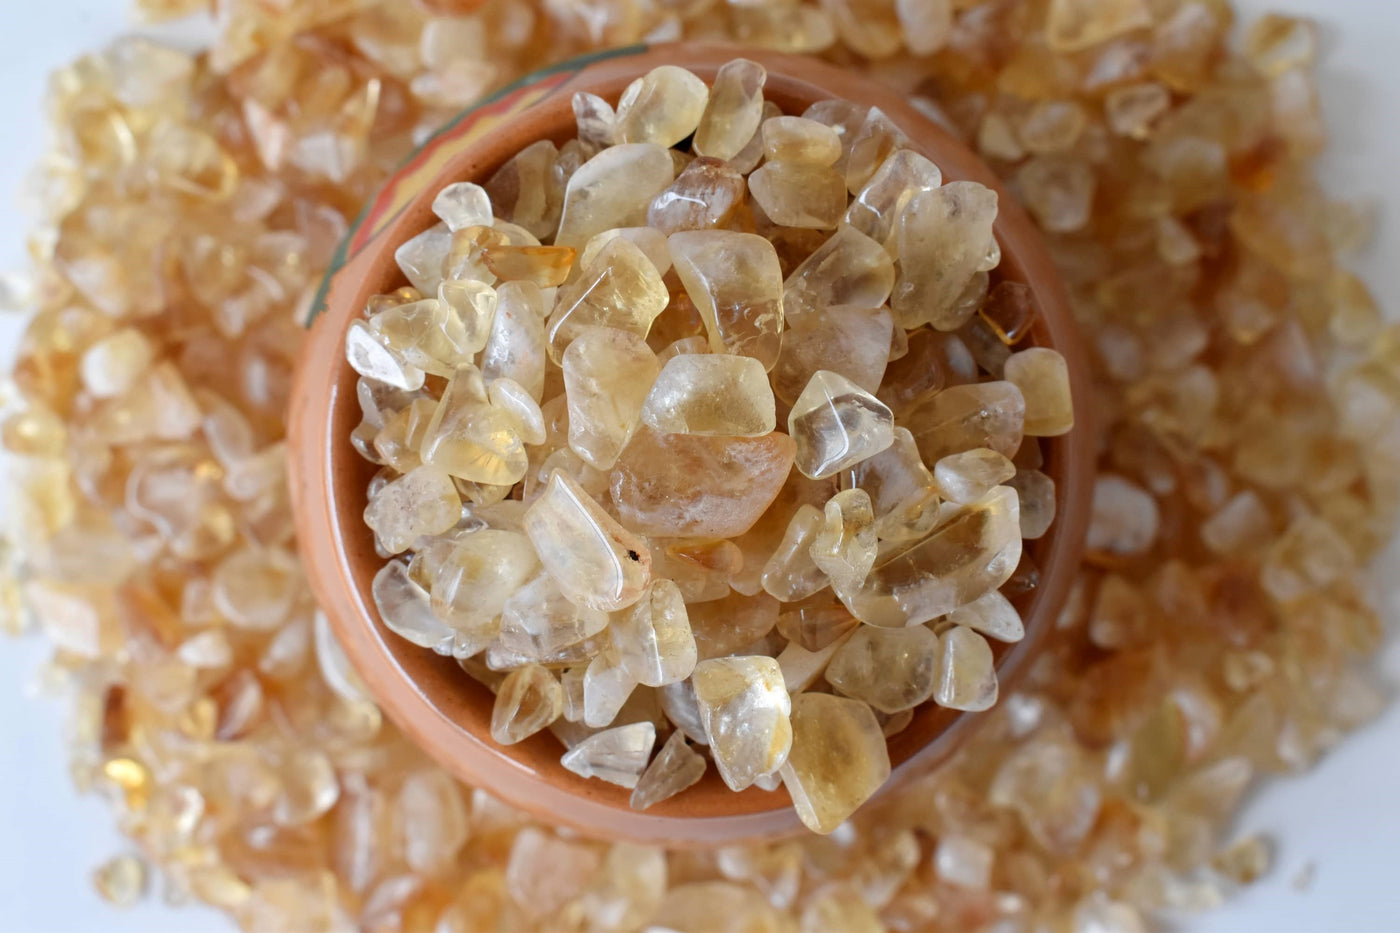 Chips de cristal de citrine brute, chips de pierres précieuses non percées dans un paquet de 4 oz, 1/2 lb, 1 lb